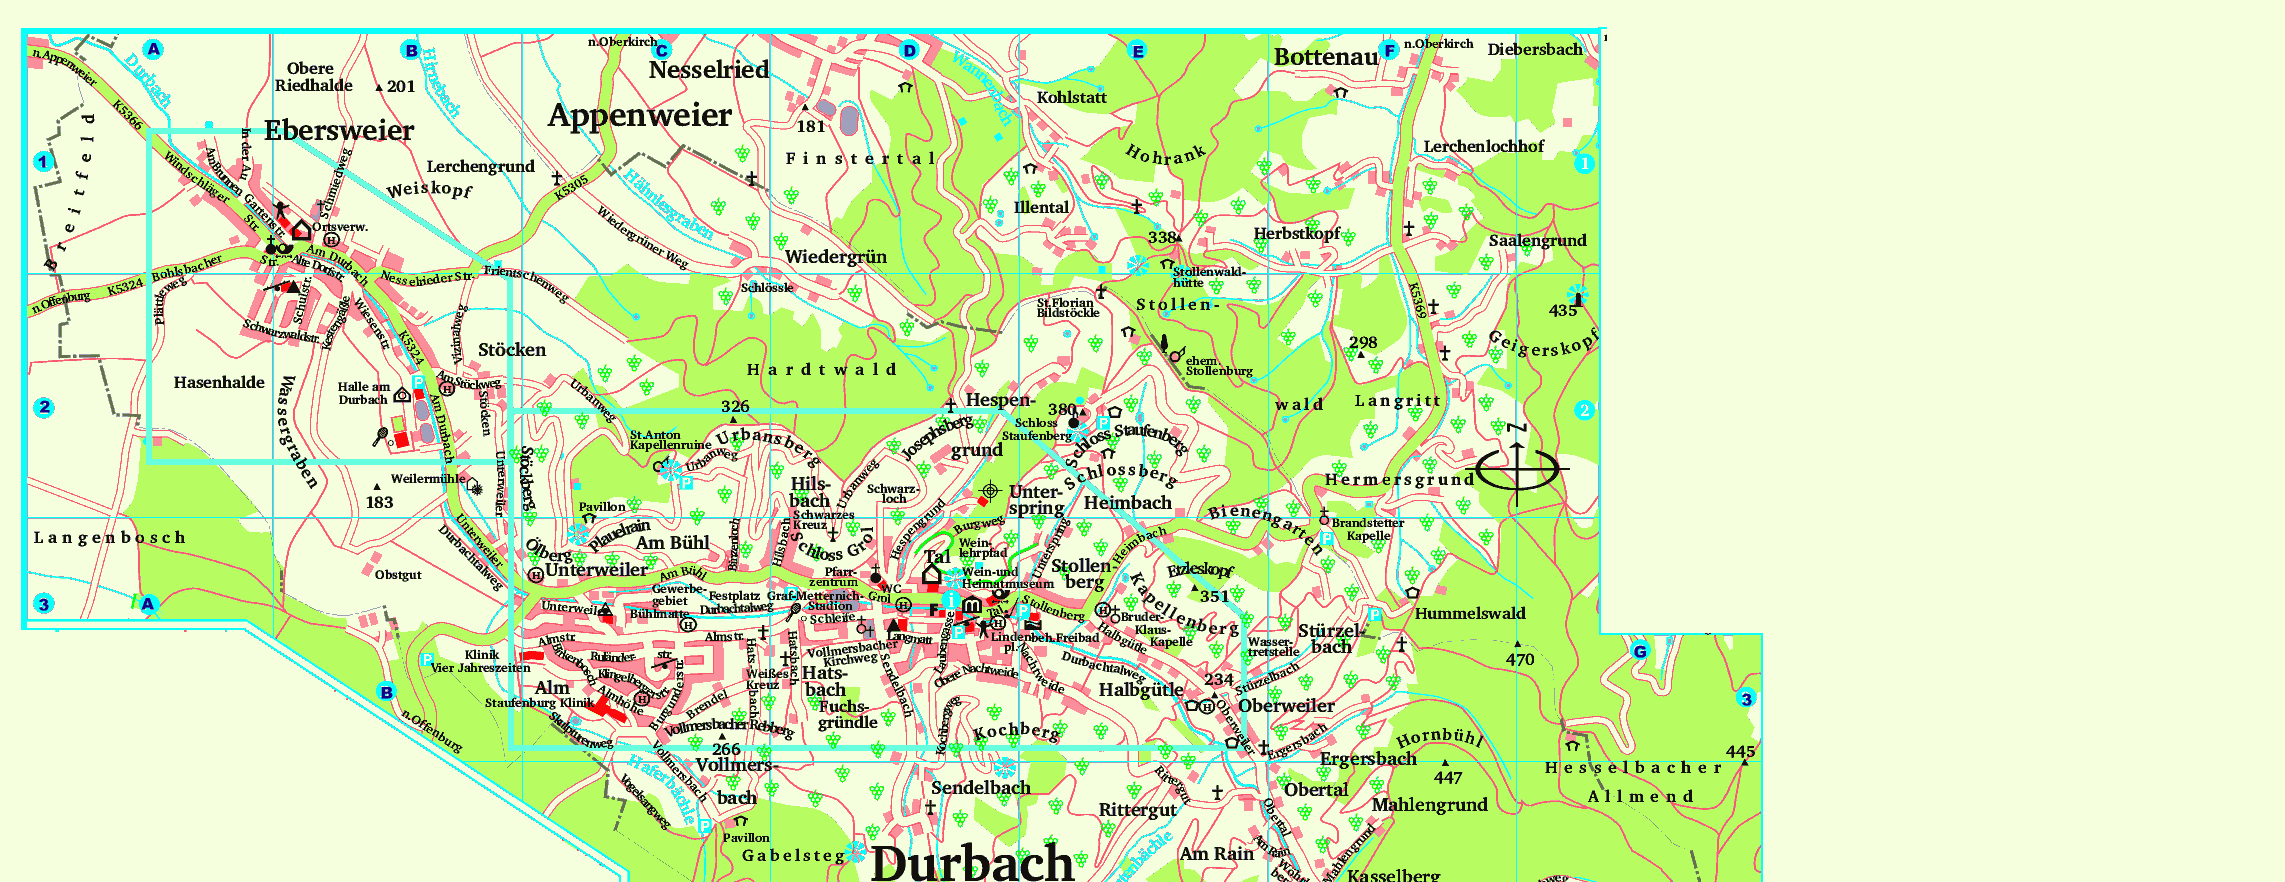 Willkommen in Durbach